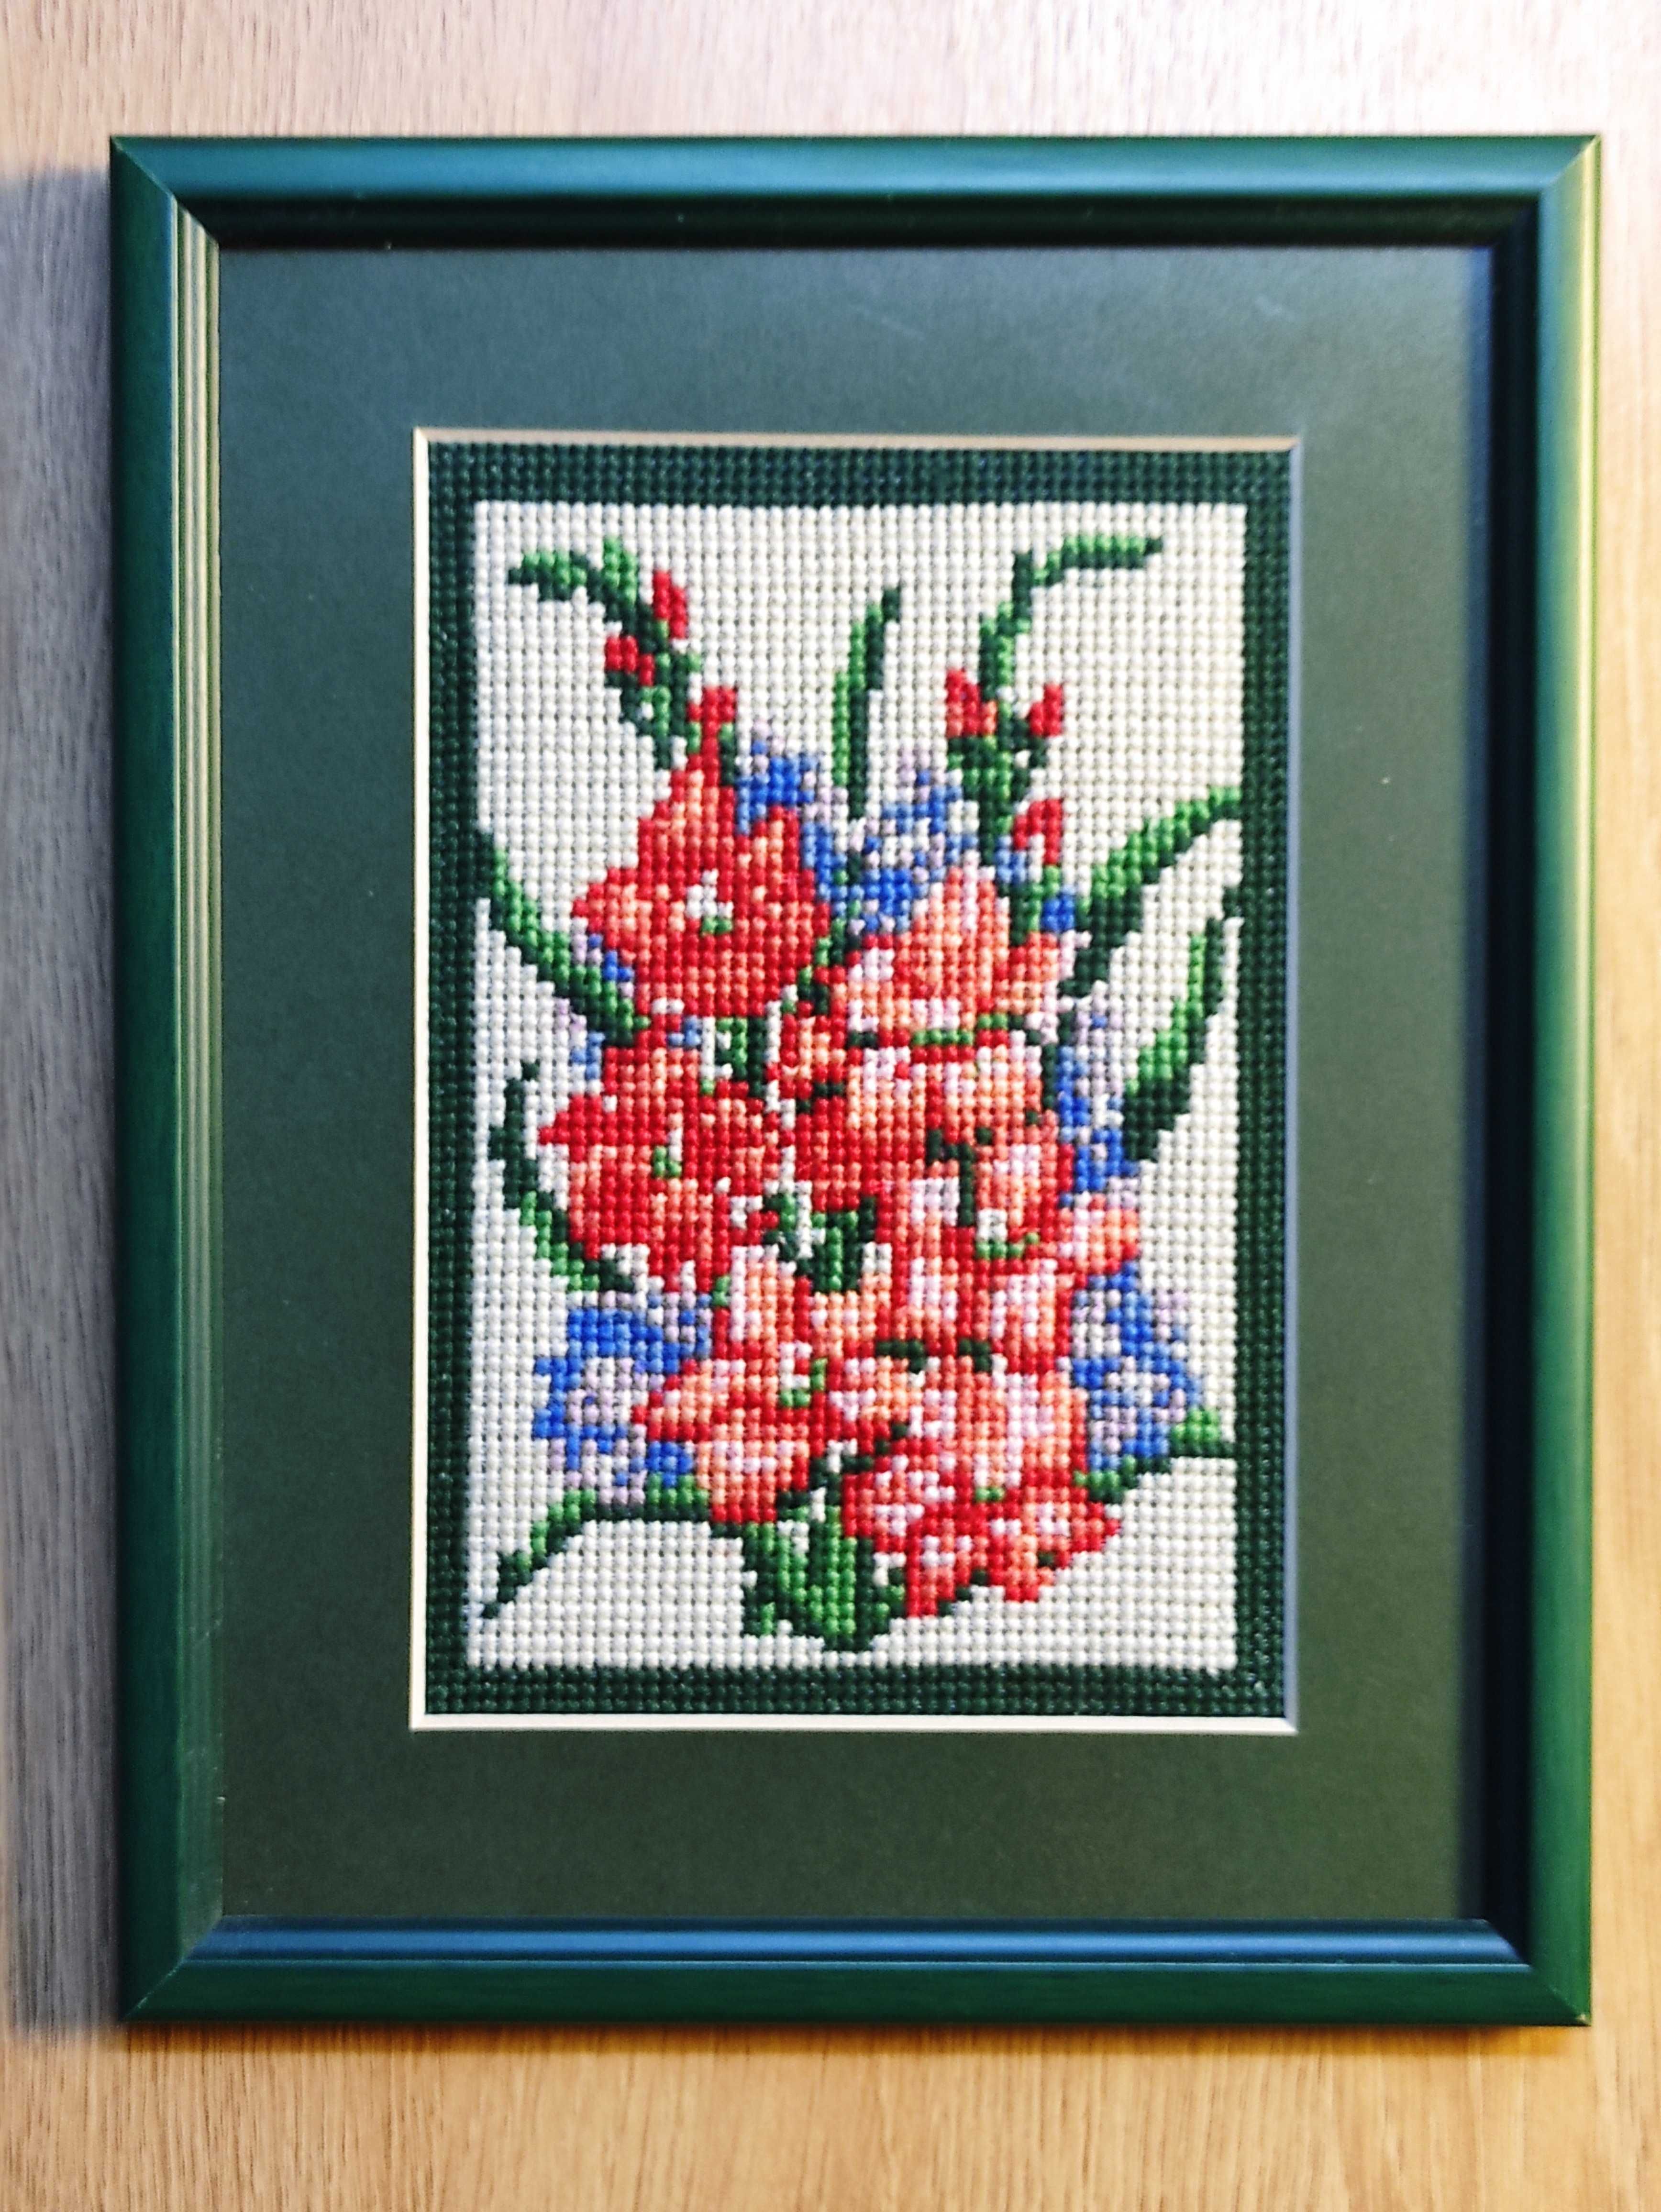 Obraz haftowany / obraz tkany - motyw kwiatowy, 20x25 cm